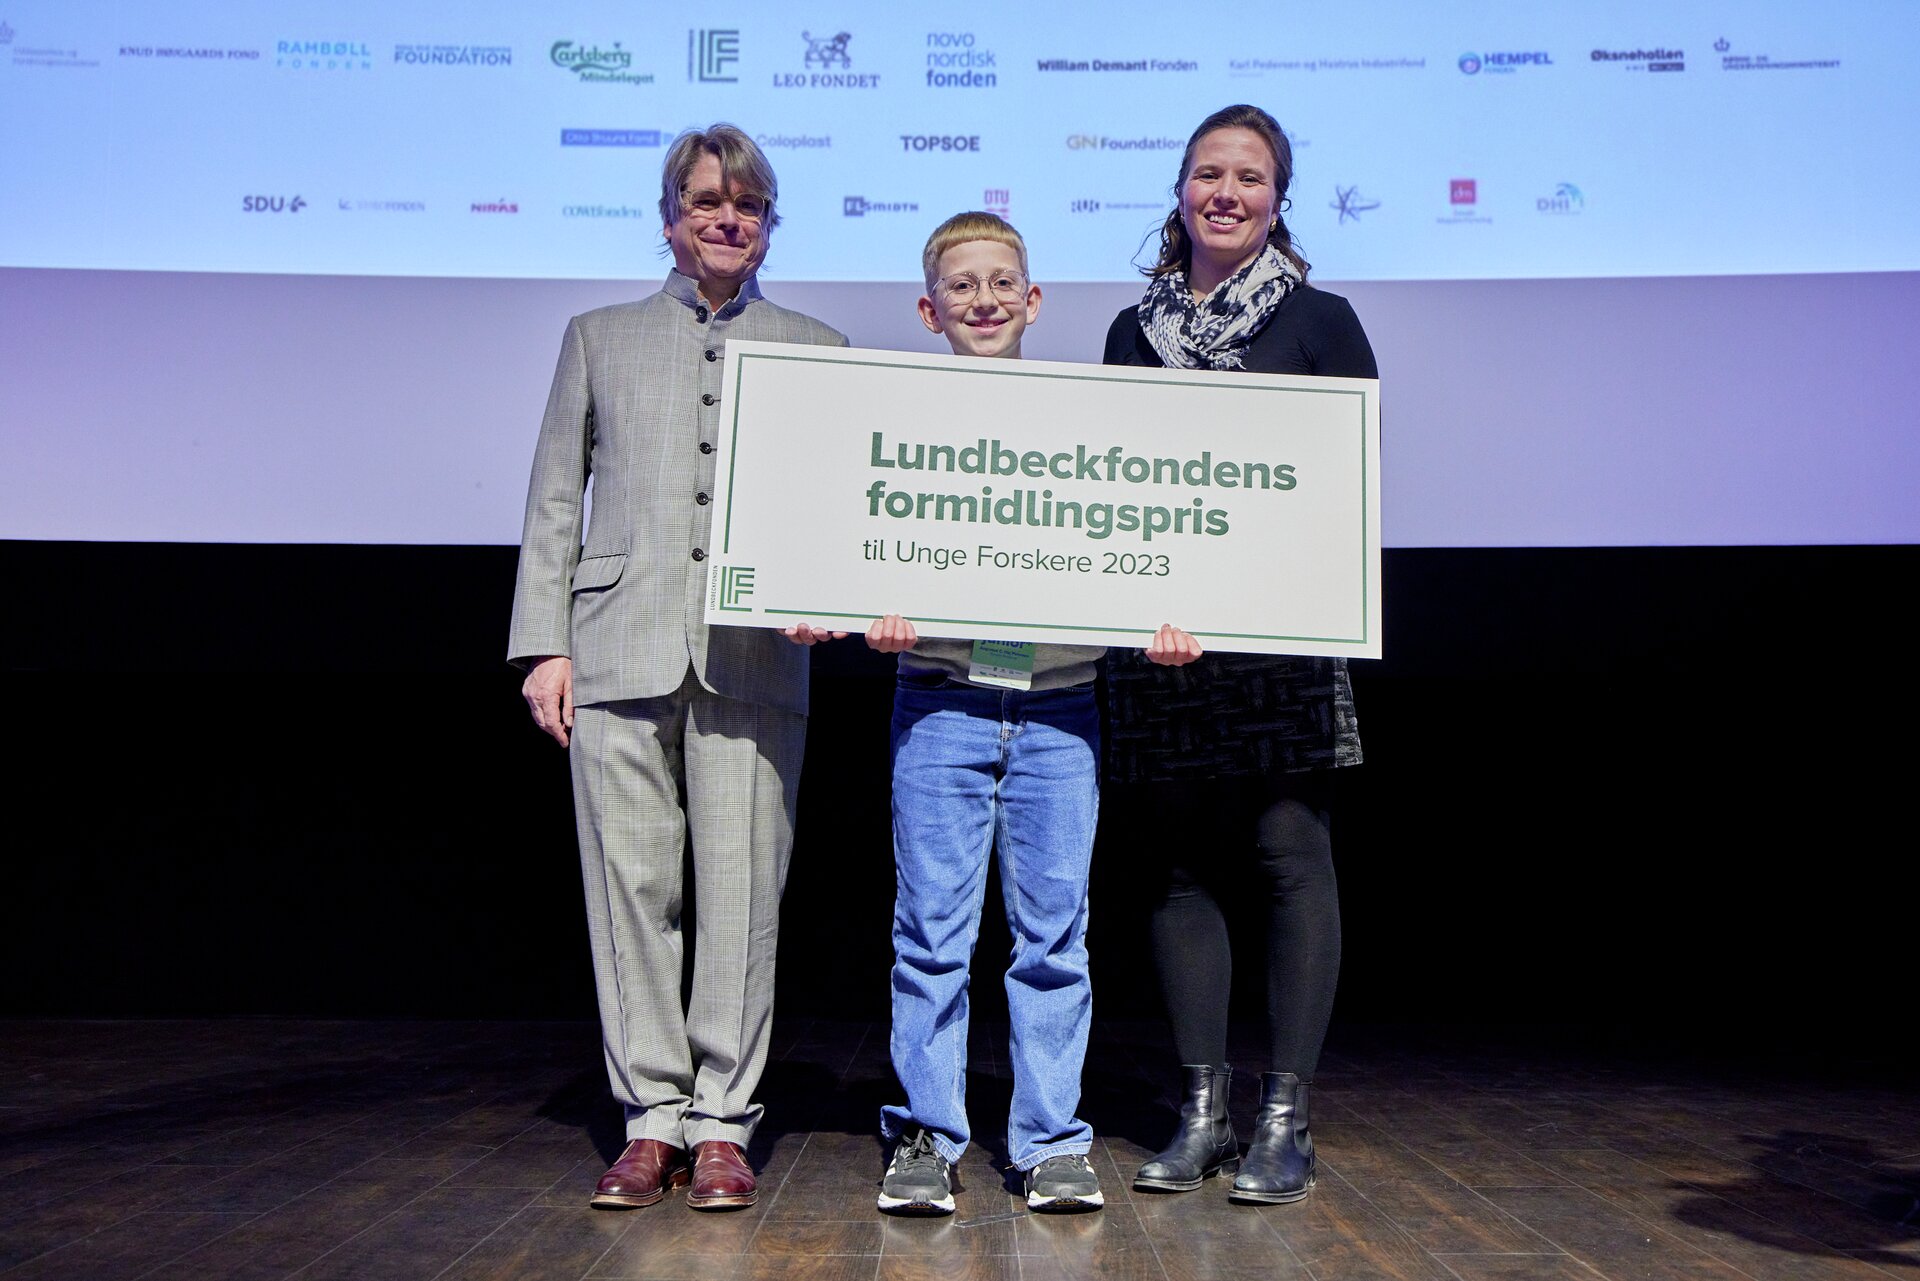 Vinder af Lundbeckfondens formidlingspris 2023